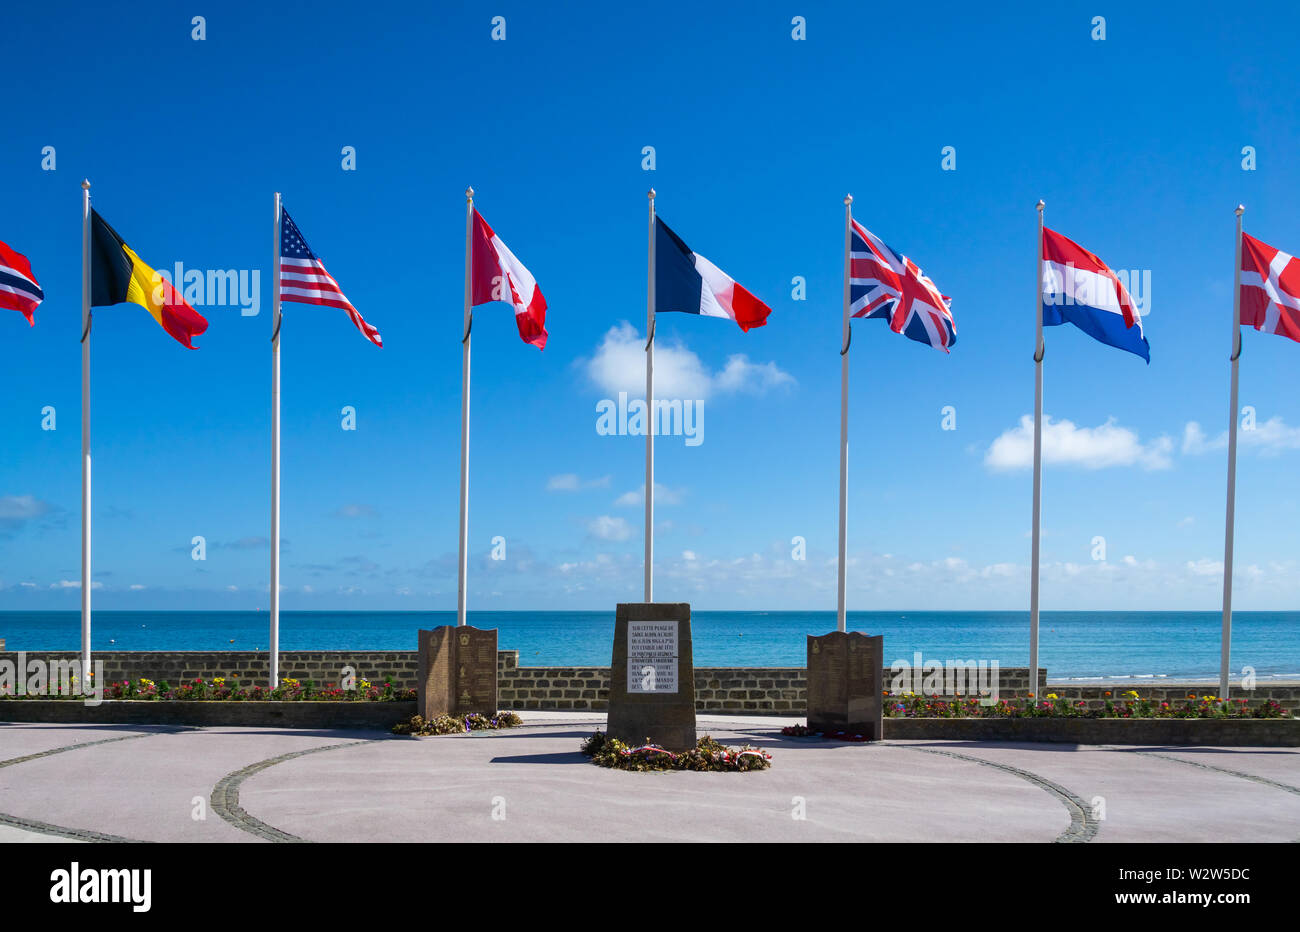 Canadian North Shore Regiment monument, la seconde guerre mondiale, deux D-Day Memorial à St-Aubin-sur-Mer, Normandie, France. Banque D'Images